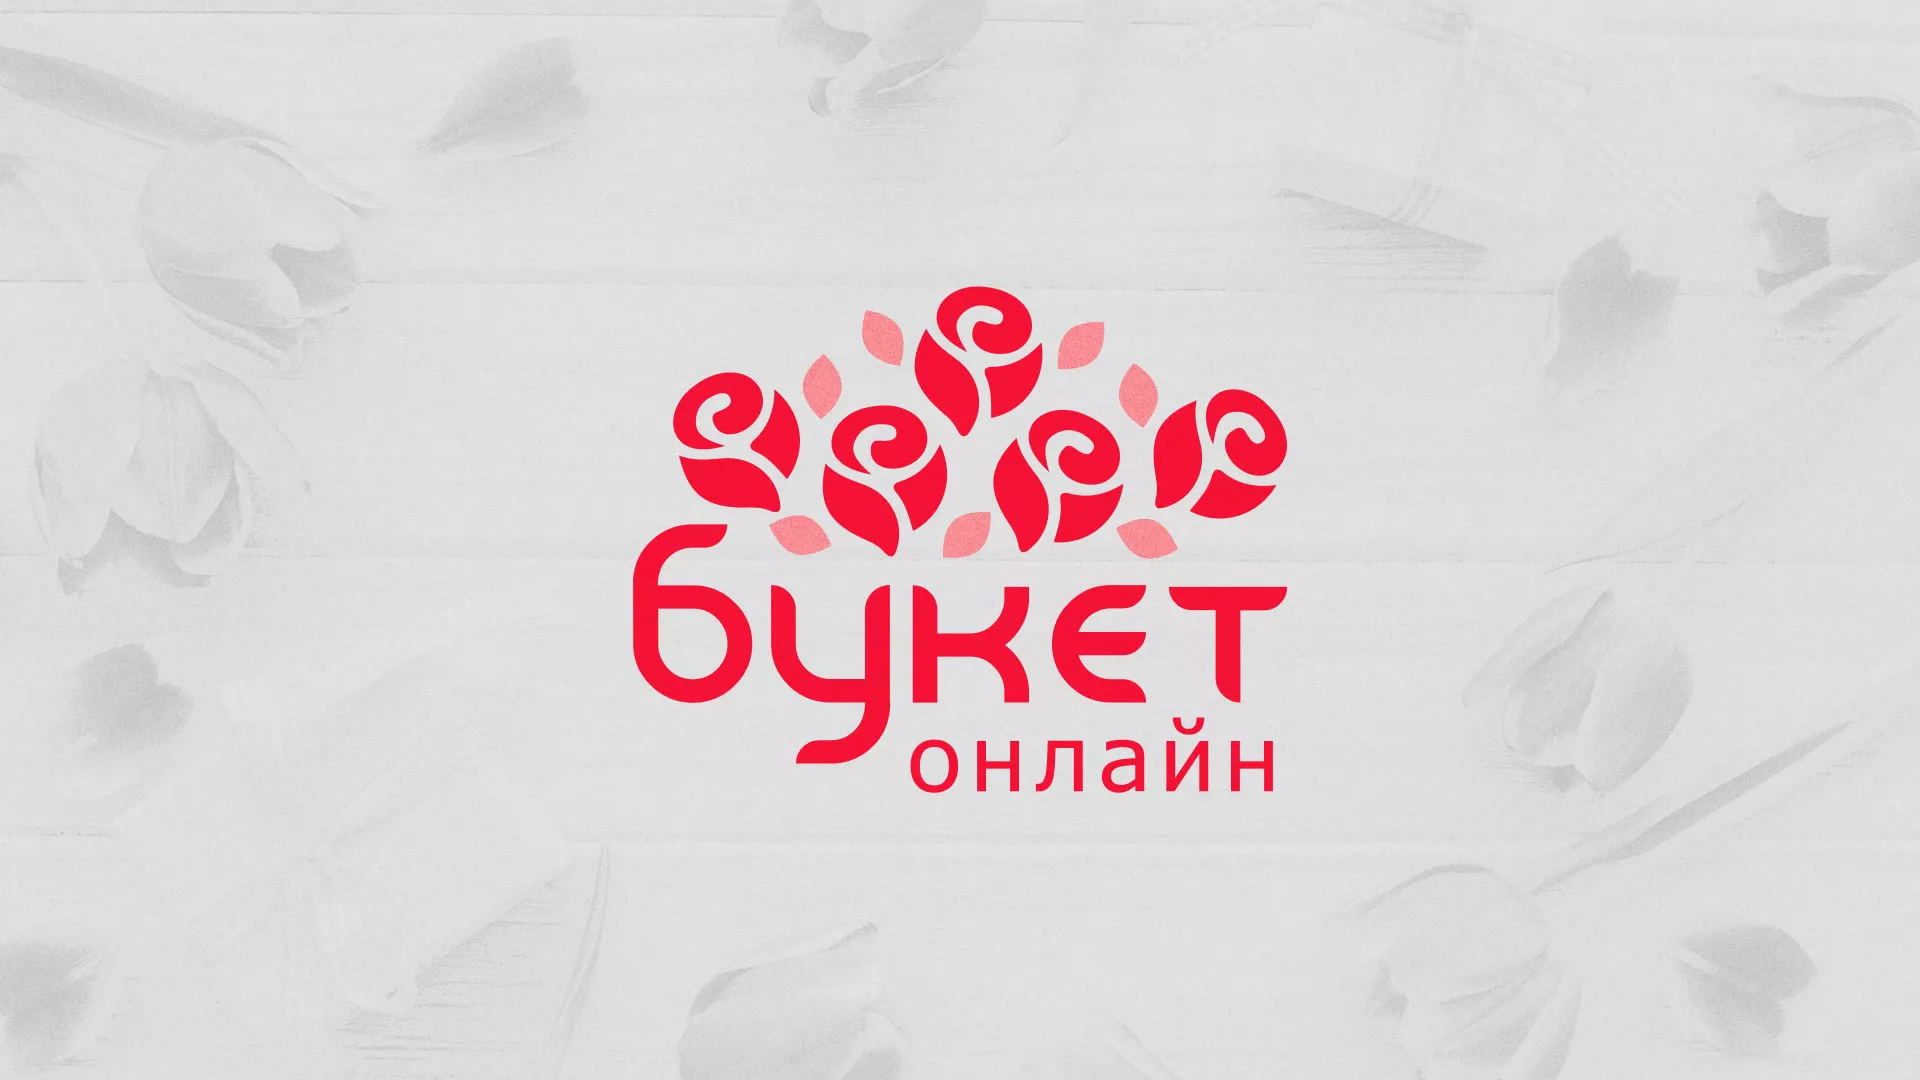 Создание интернет-магазина «Букет-онлайн» по цветам в Уссурийске